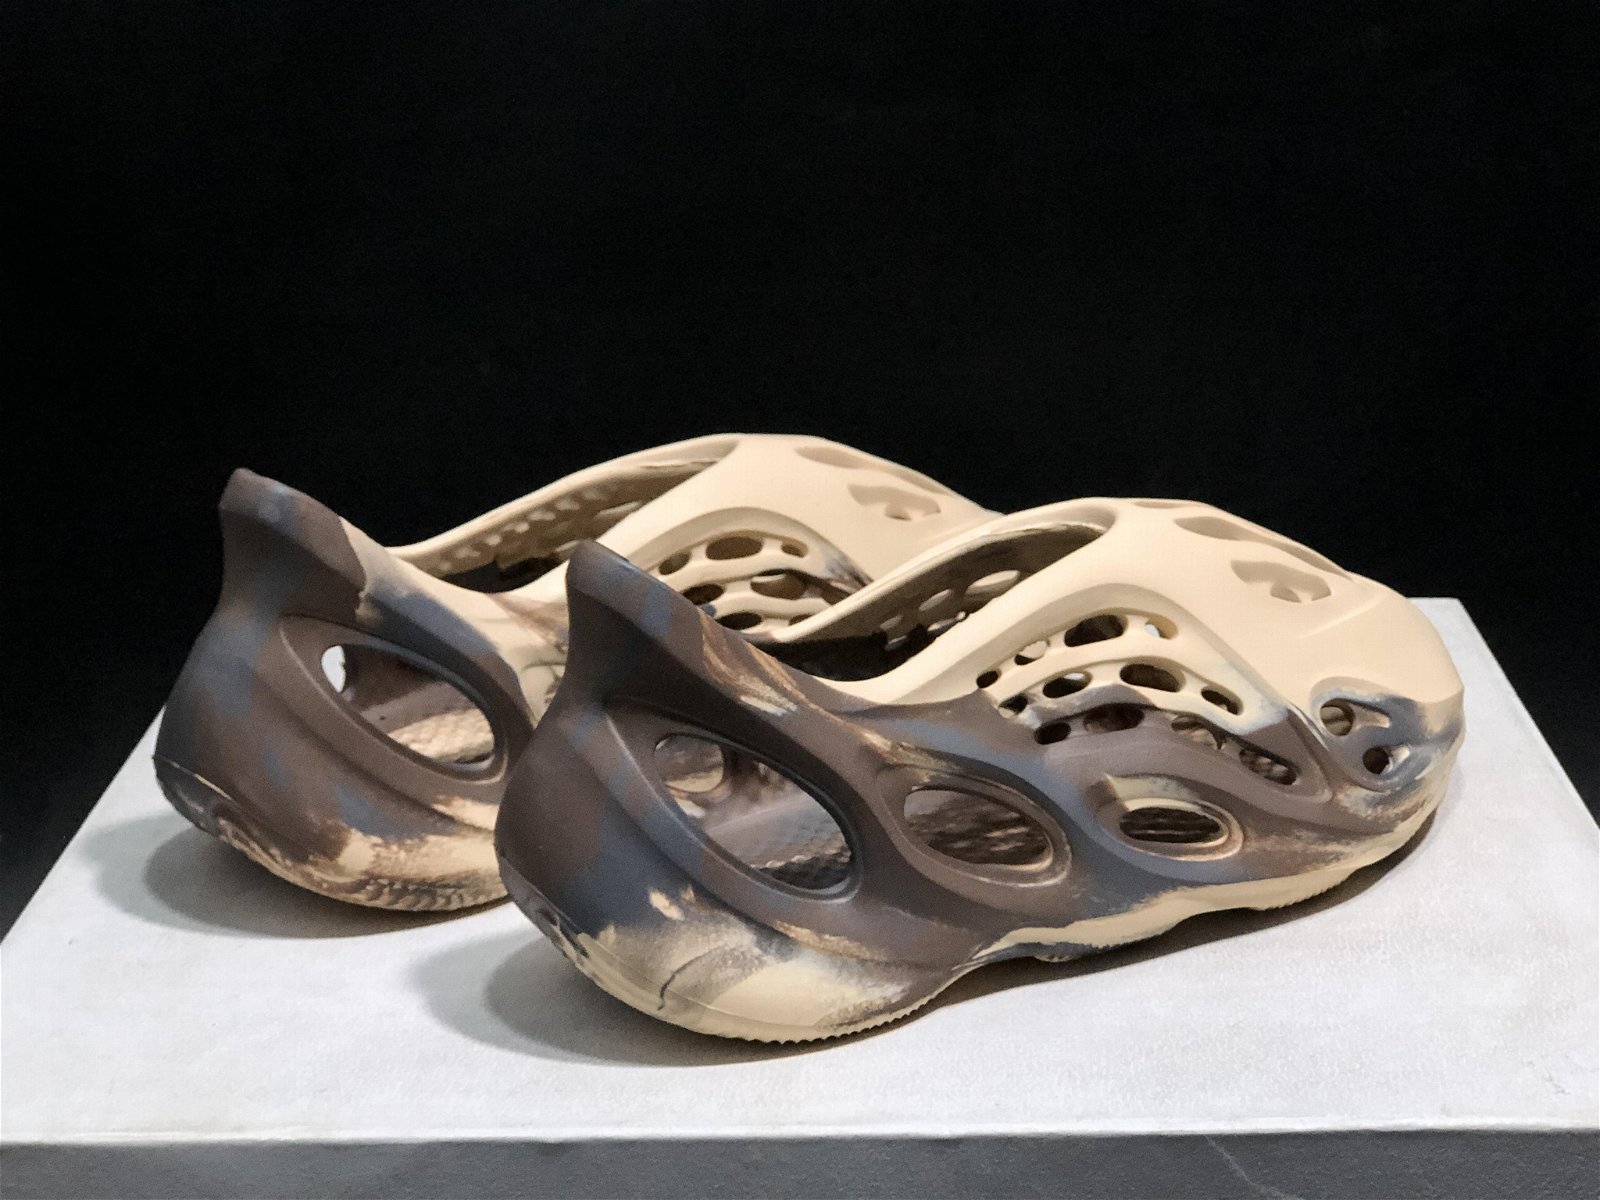        originals Yeezy Foam Runner MX Cream Clay sandal Yeezy women sandals  3